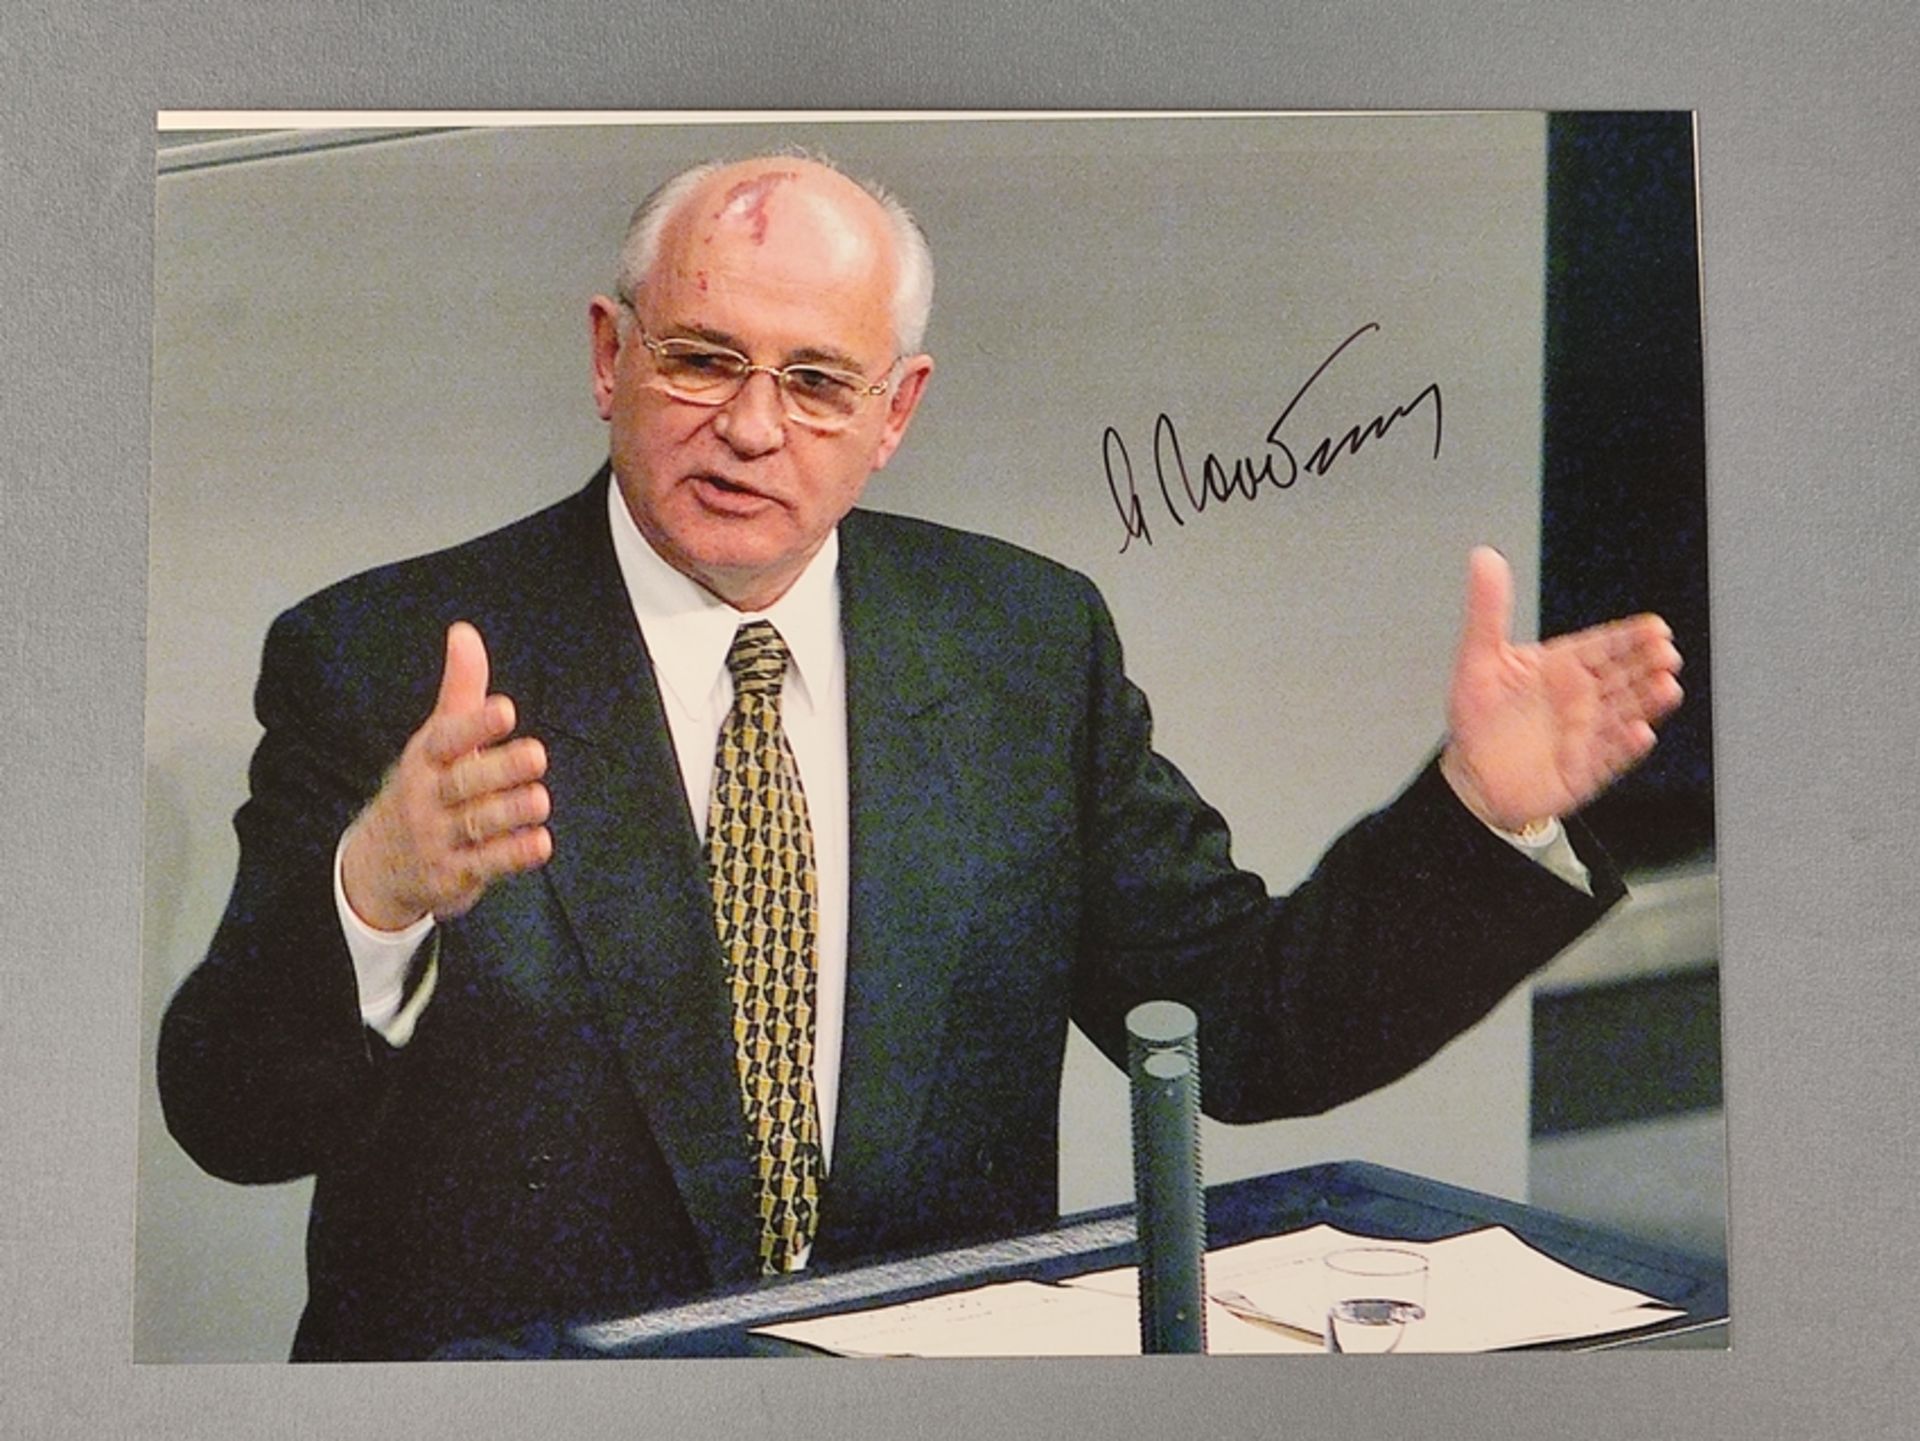 Autogramm Michail Sergejewitsch Gorbatschow, Photographie mit eigenhändiger Unterschrift, zeigt Mic